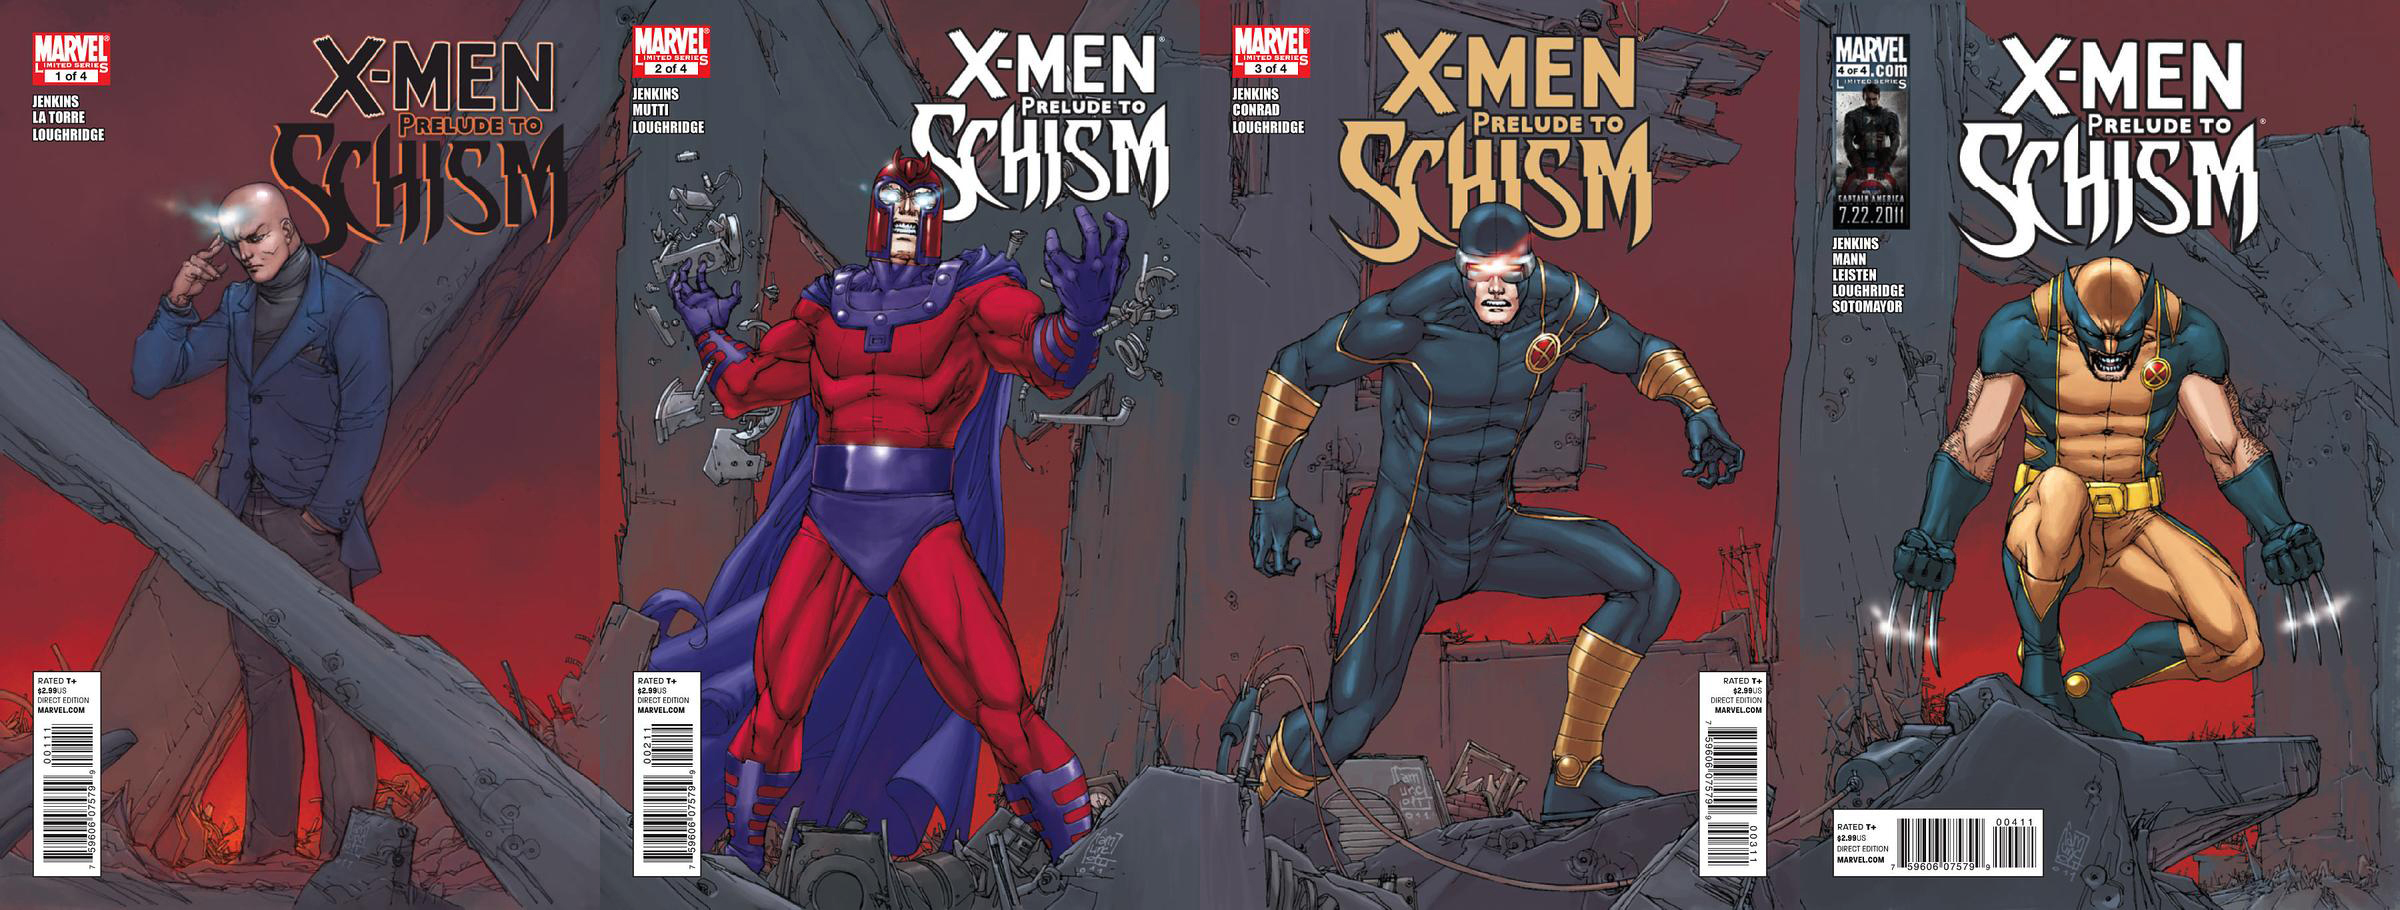 X-men: Schism #3